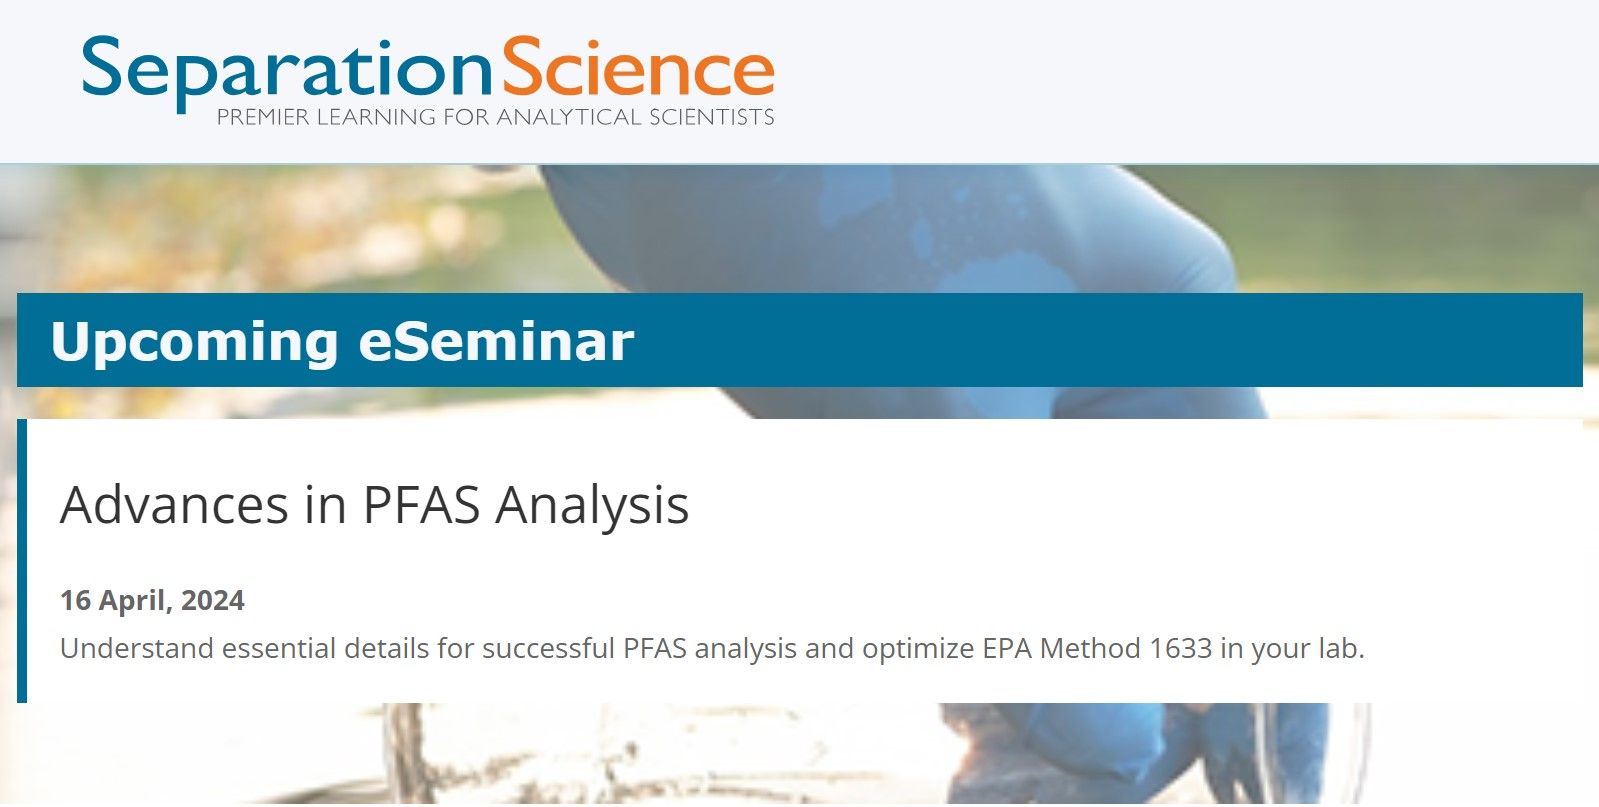 SelectScience: Advances in PFAS Analysis